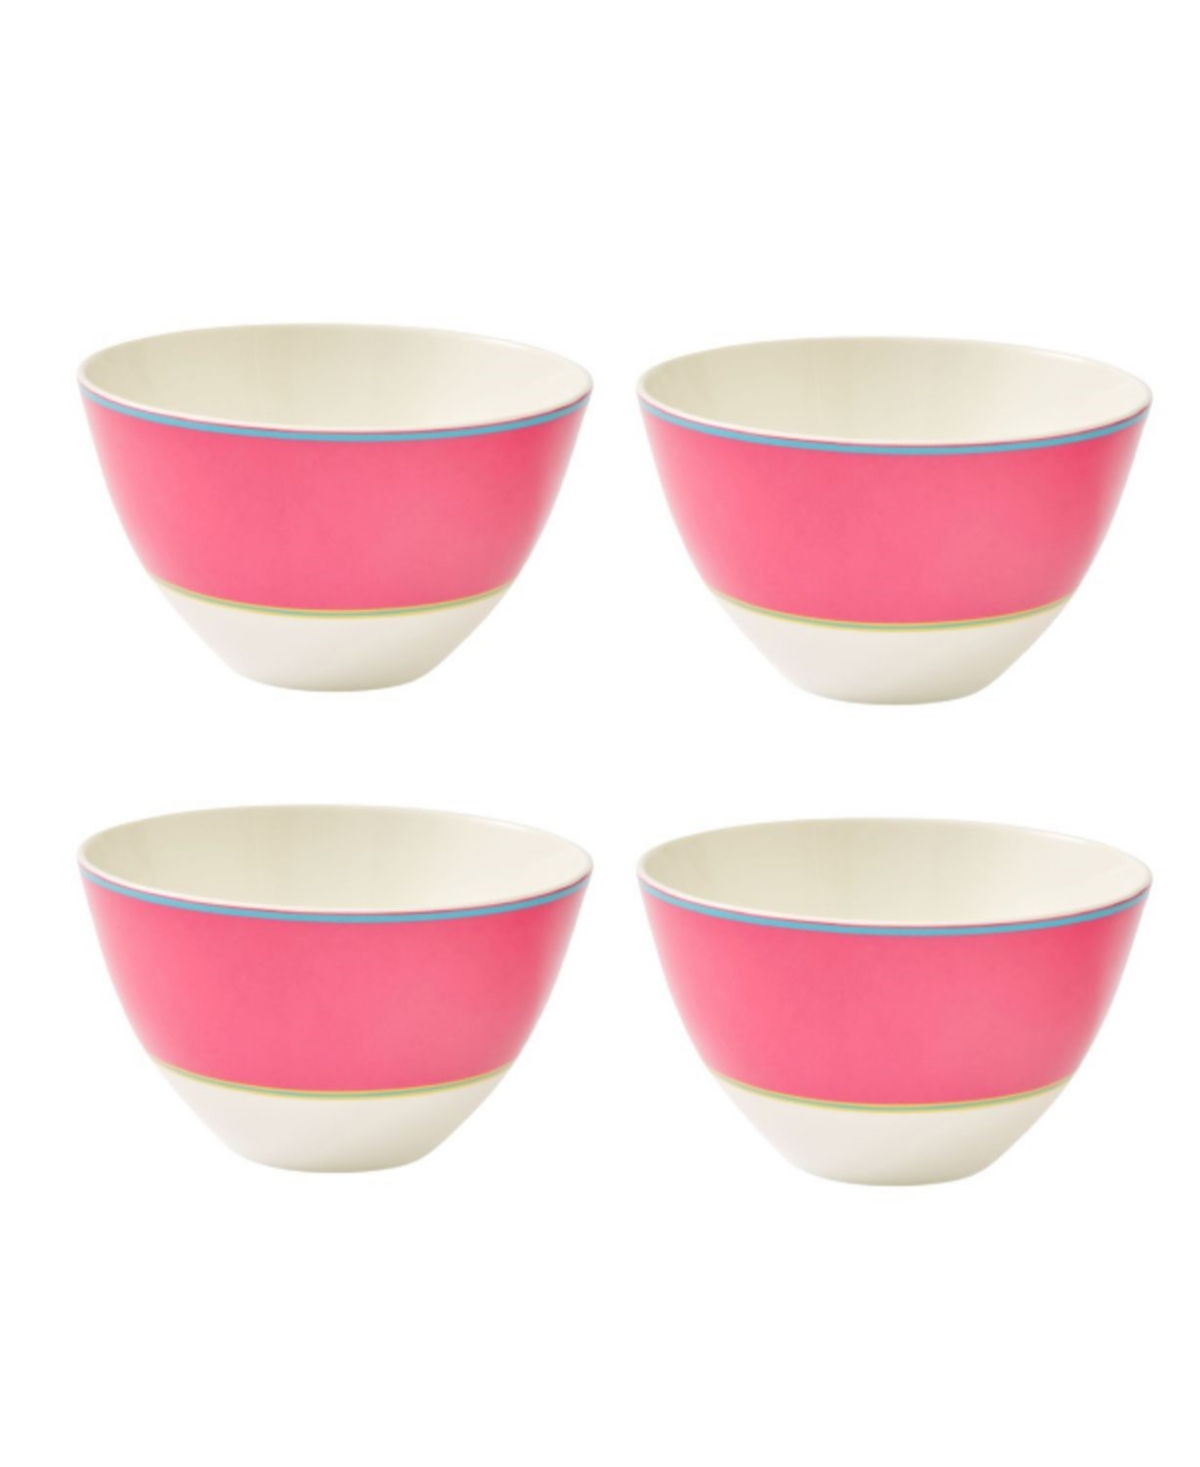 Calypso 4 Piece Bowls Set, Service for 4 - Stripe